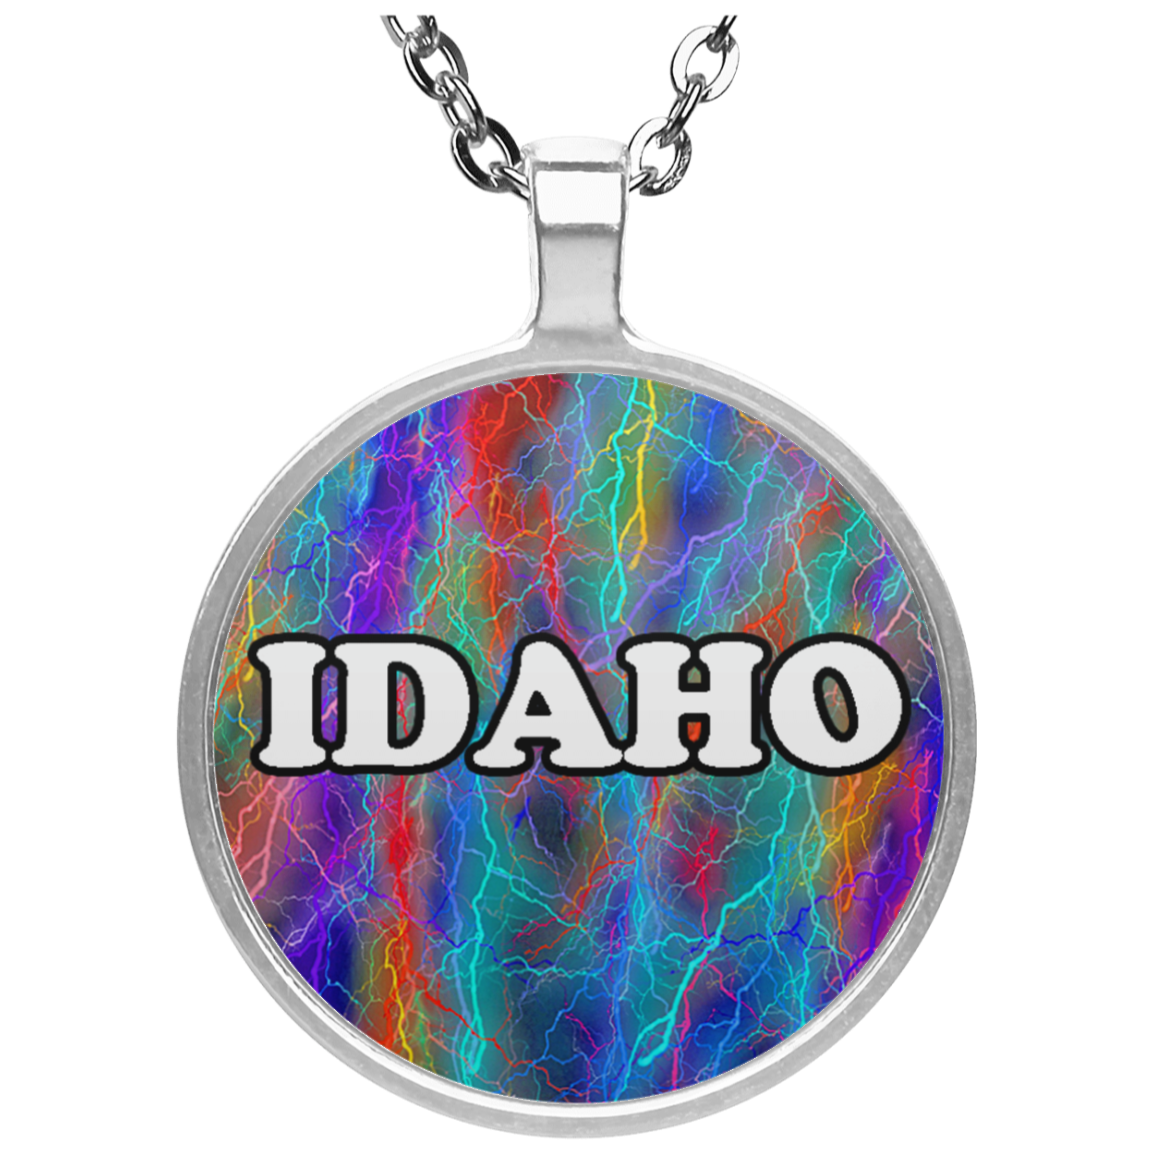 Idaho Necklace